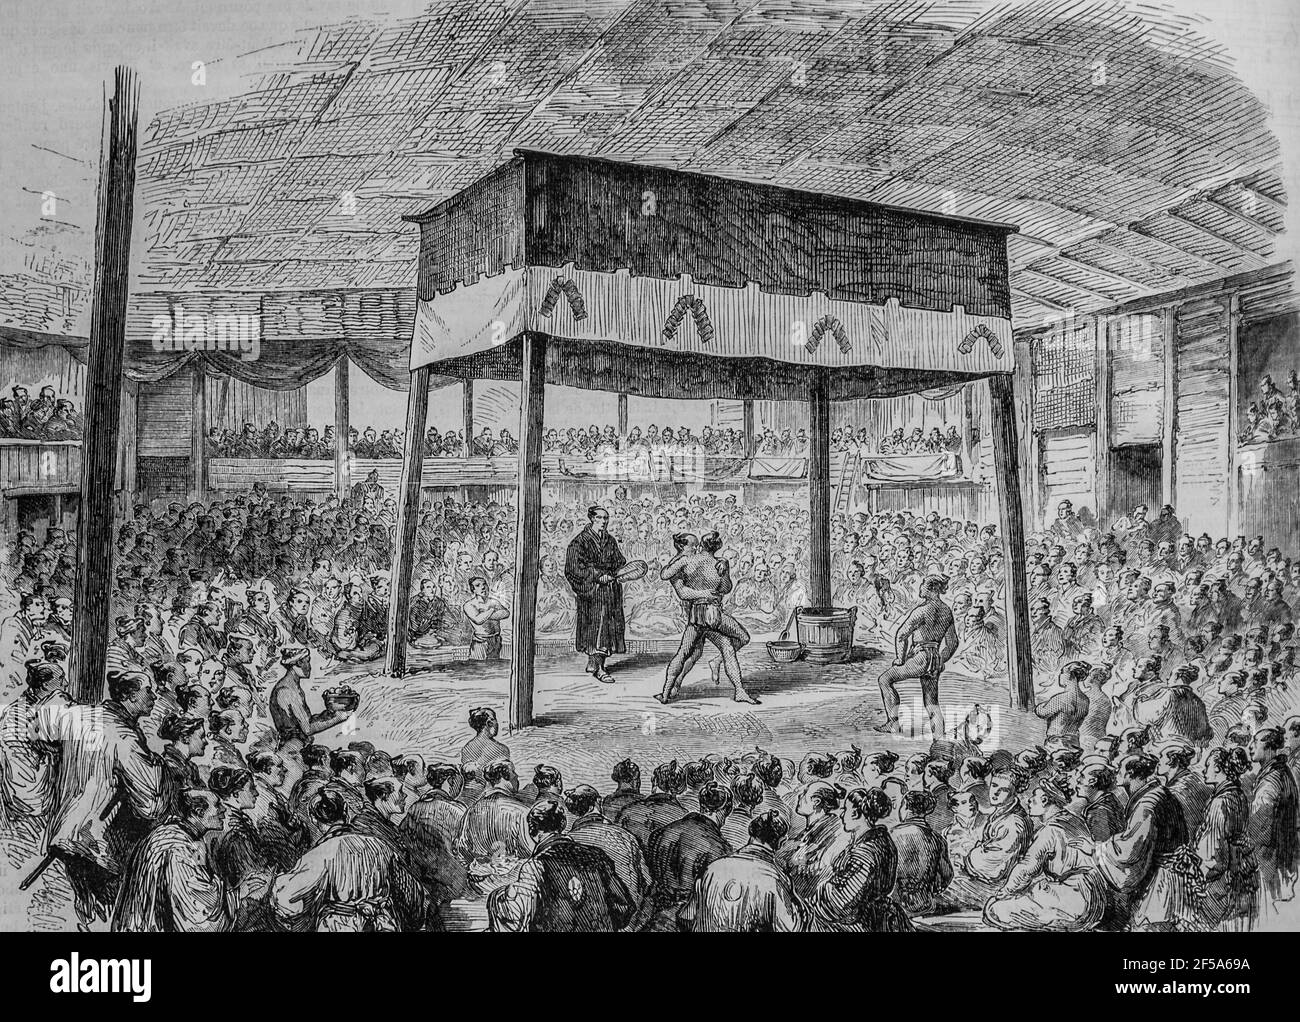 lutteurs japonais a osaka, l'univers illustre,editeur michel levy 1868 Stock Photo